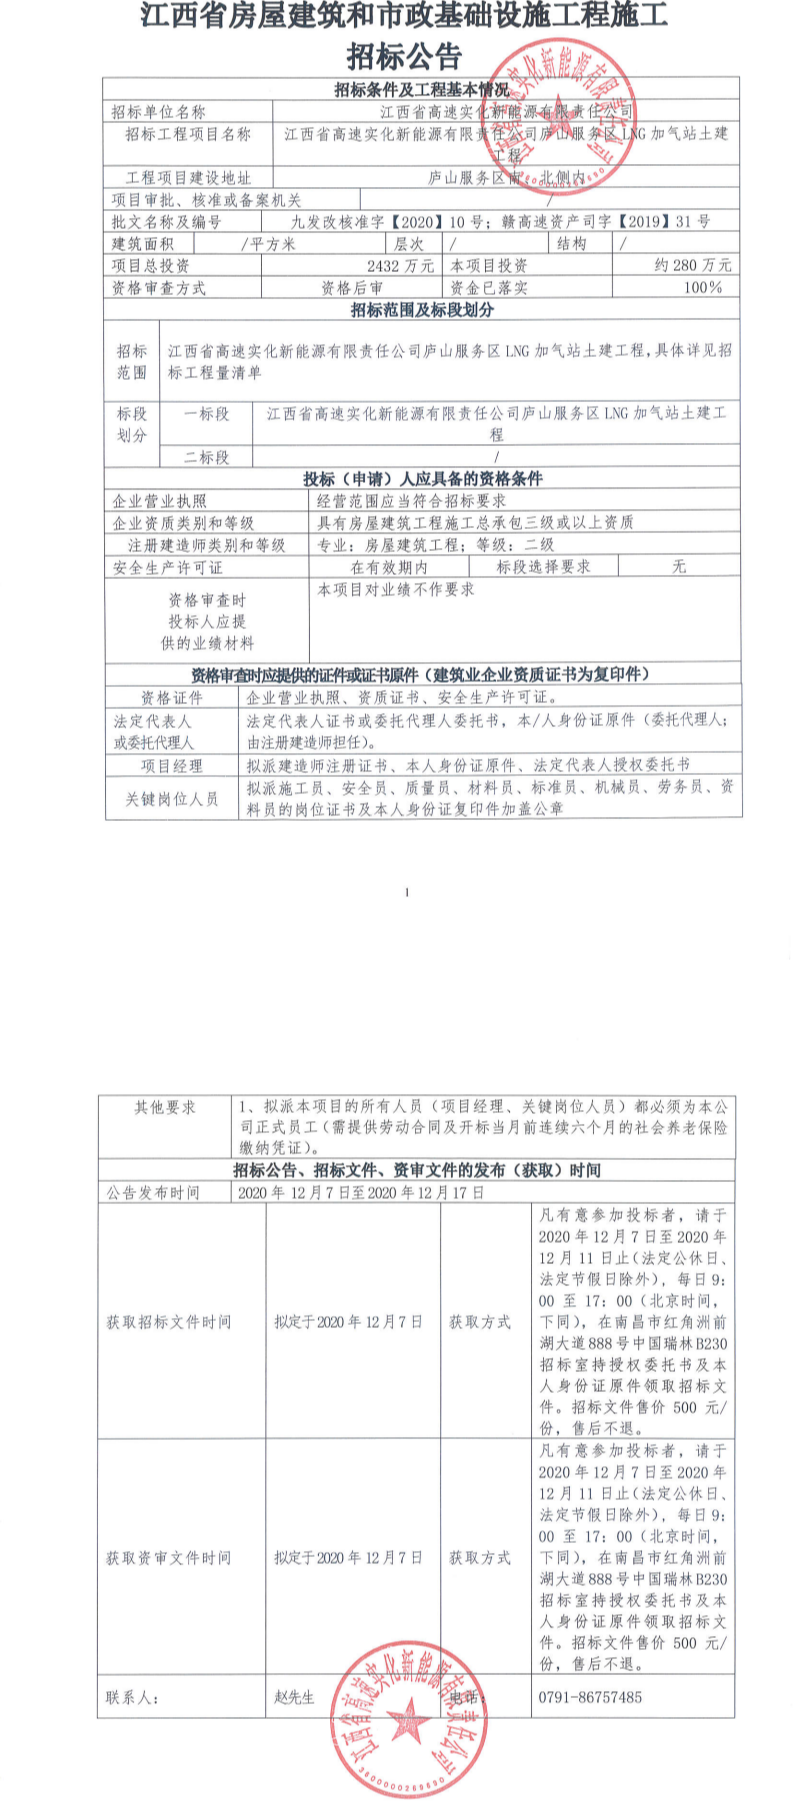 江西省高速实化新能源有限责任公司庐山服务区LNG加气站土建工程招标公告